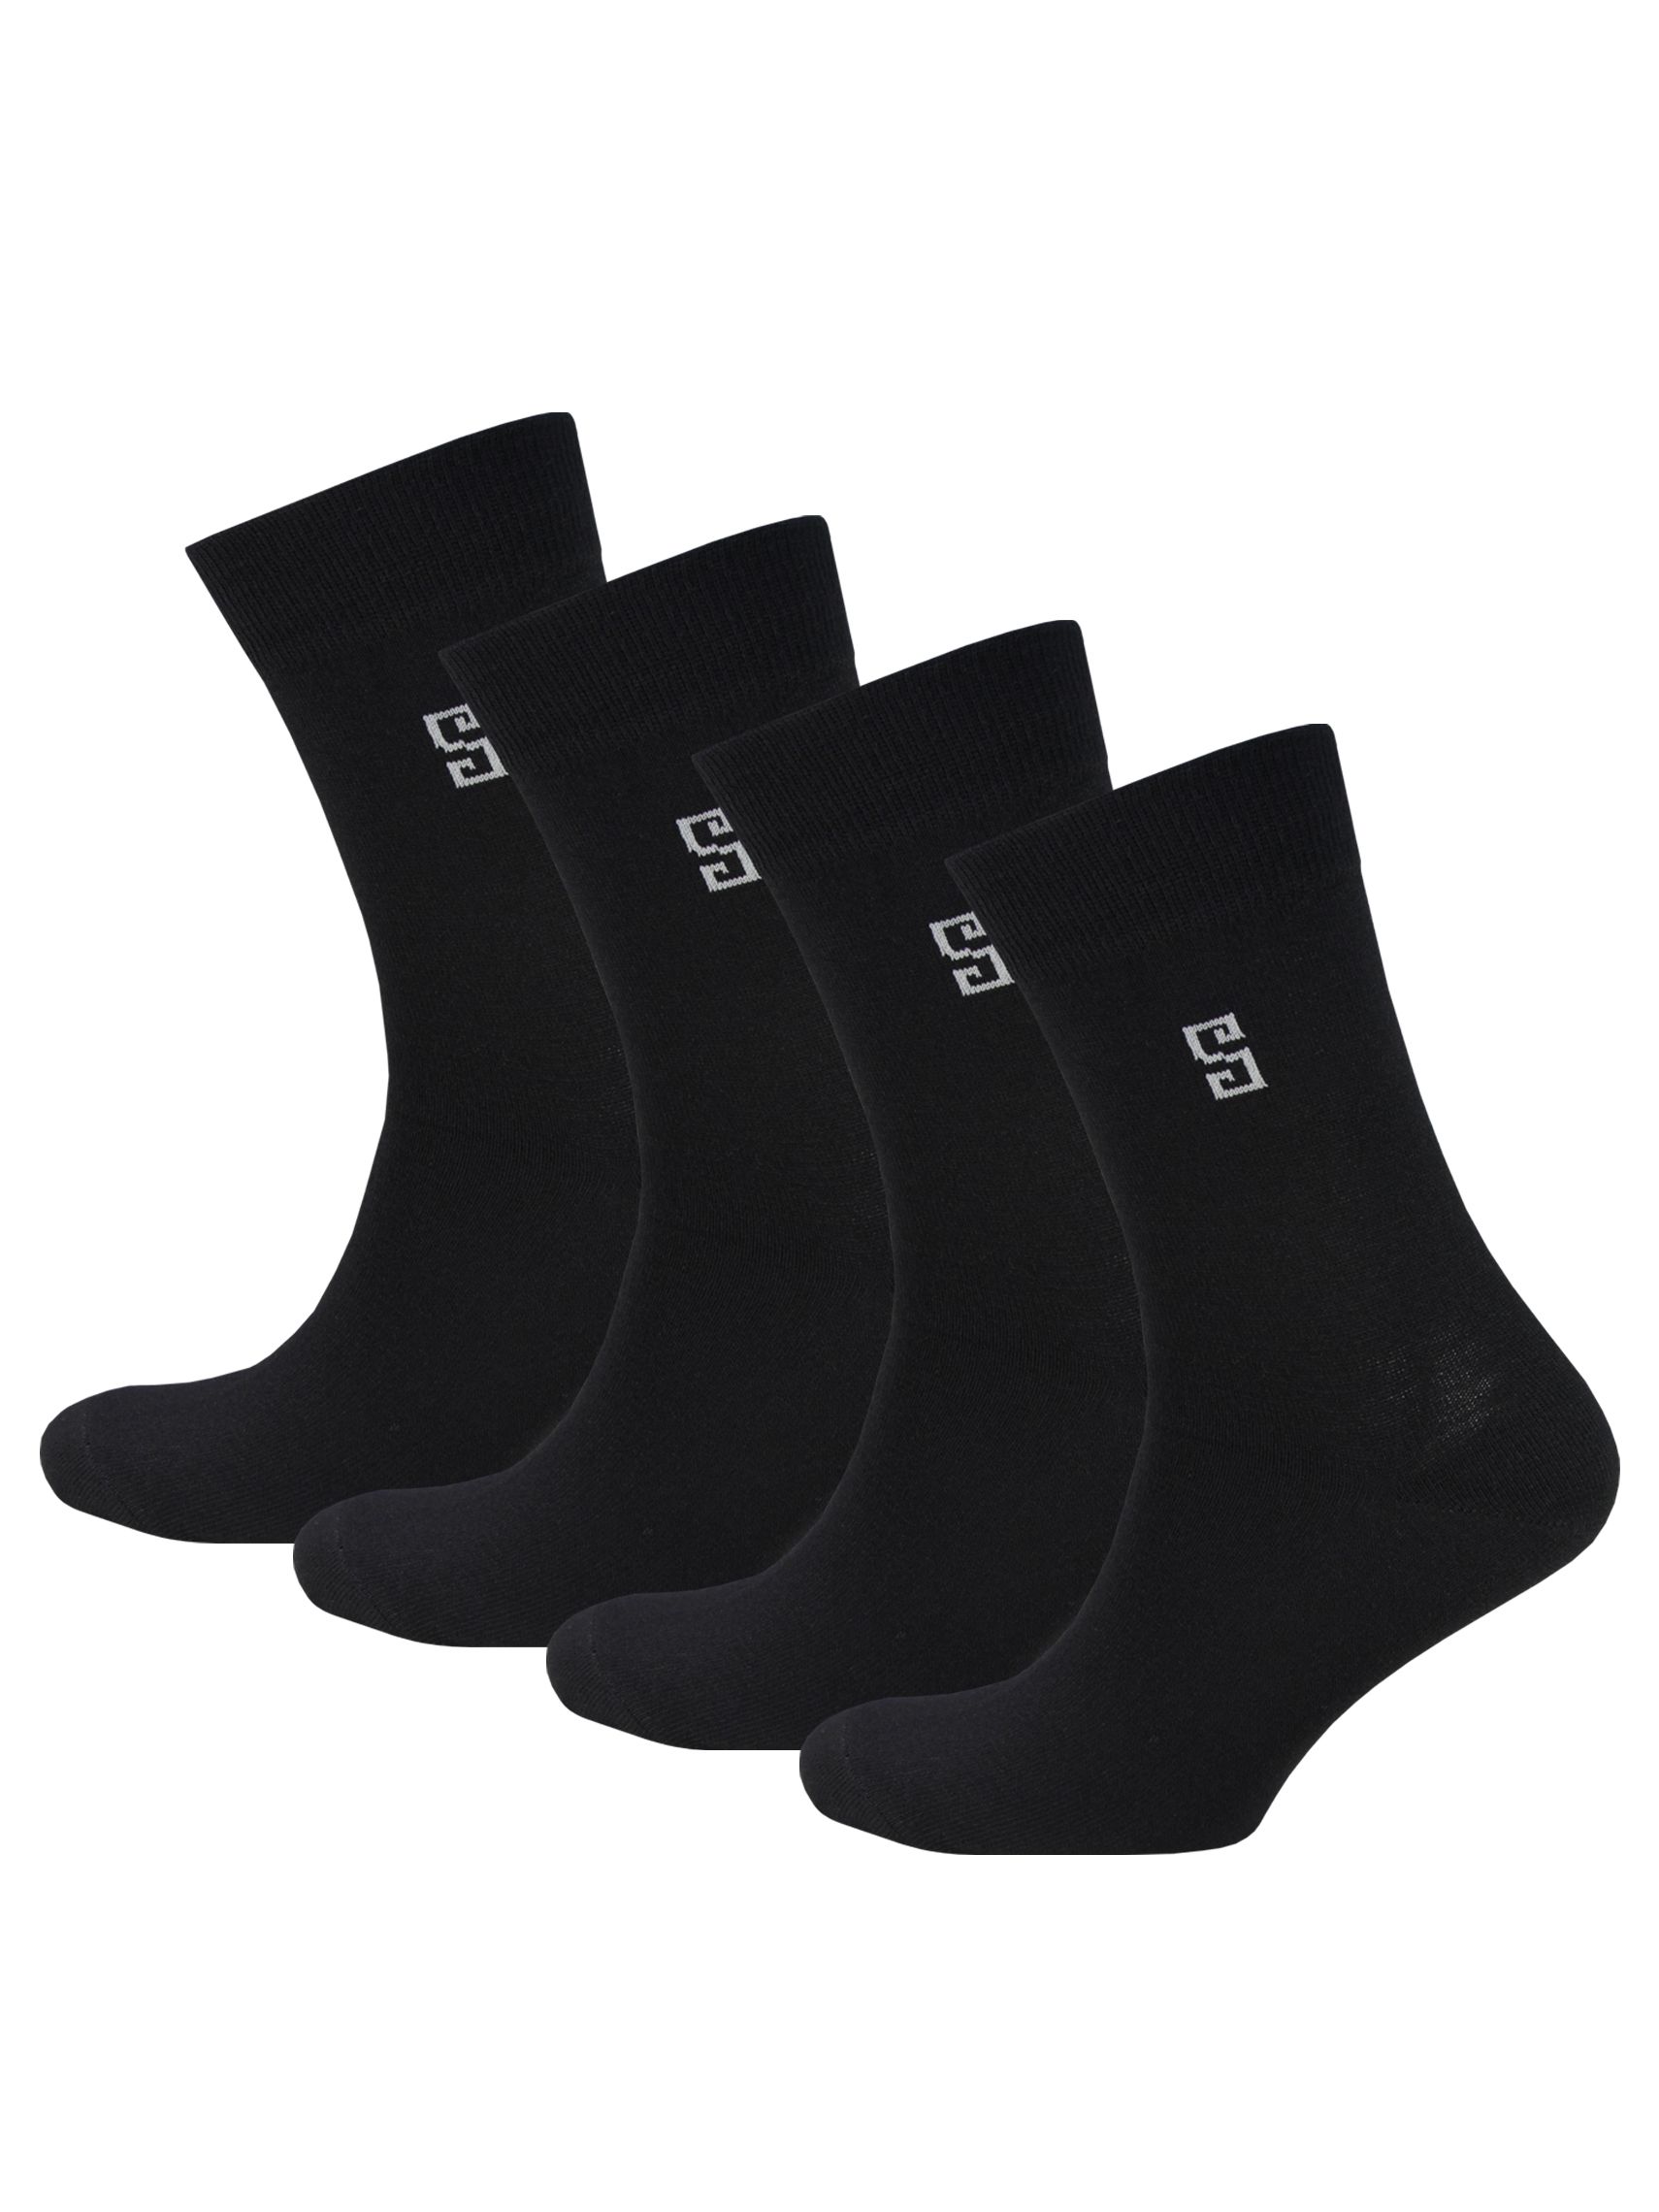 Комплект носков мужских Status Классические из хлопка черных 25, 4 пары